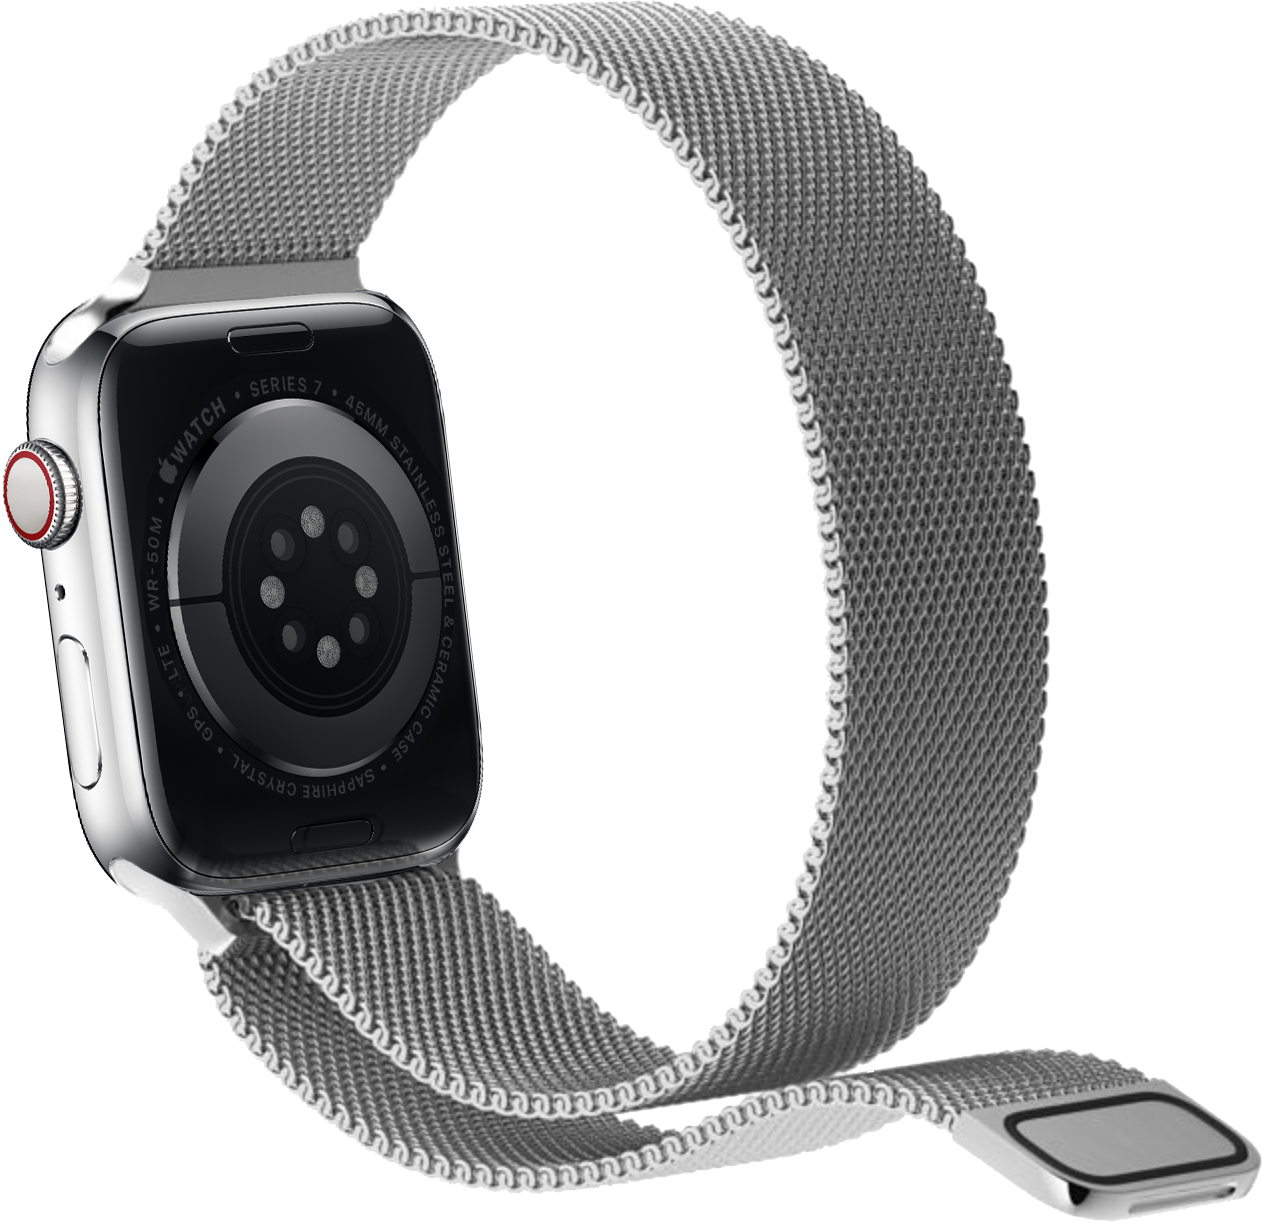 Cambiar la correa del Apple Watch - Soporte técnico de Apple (MX)